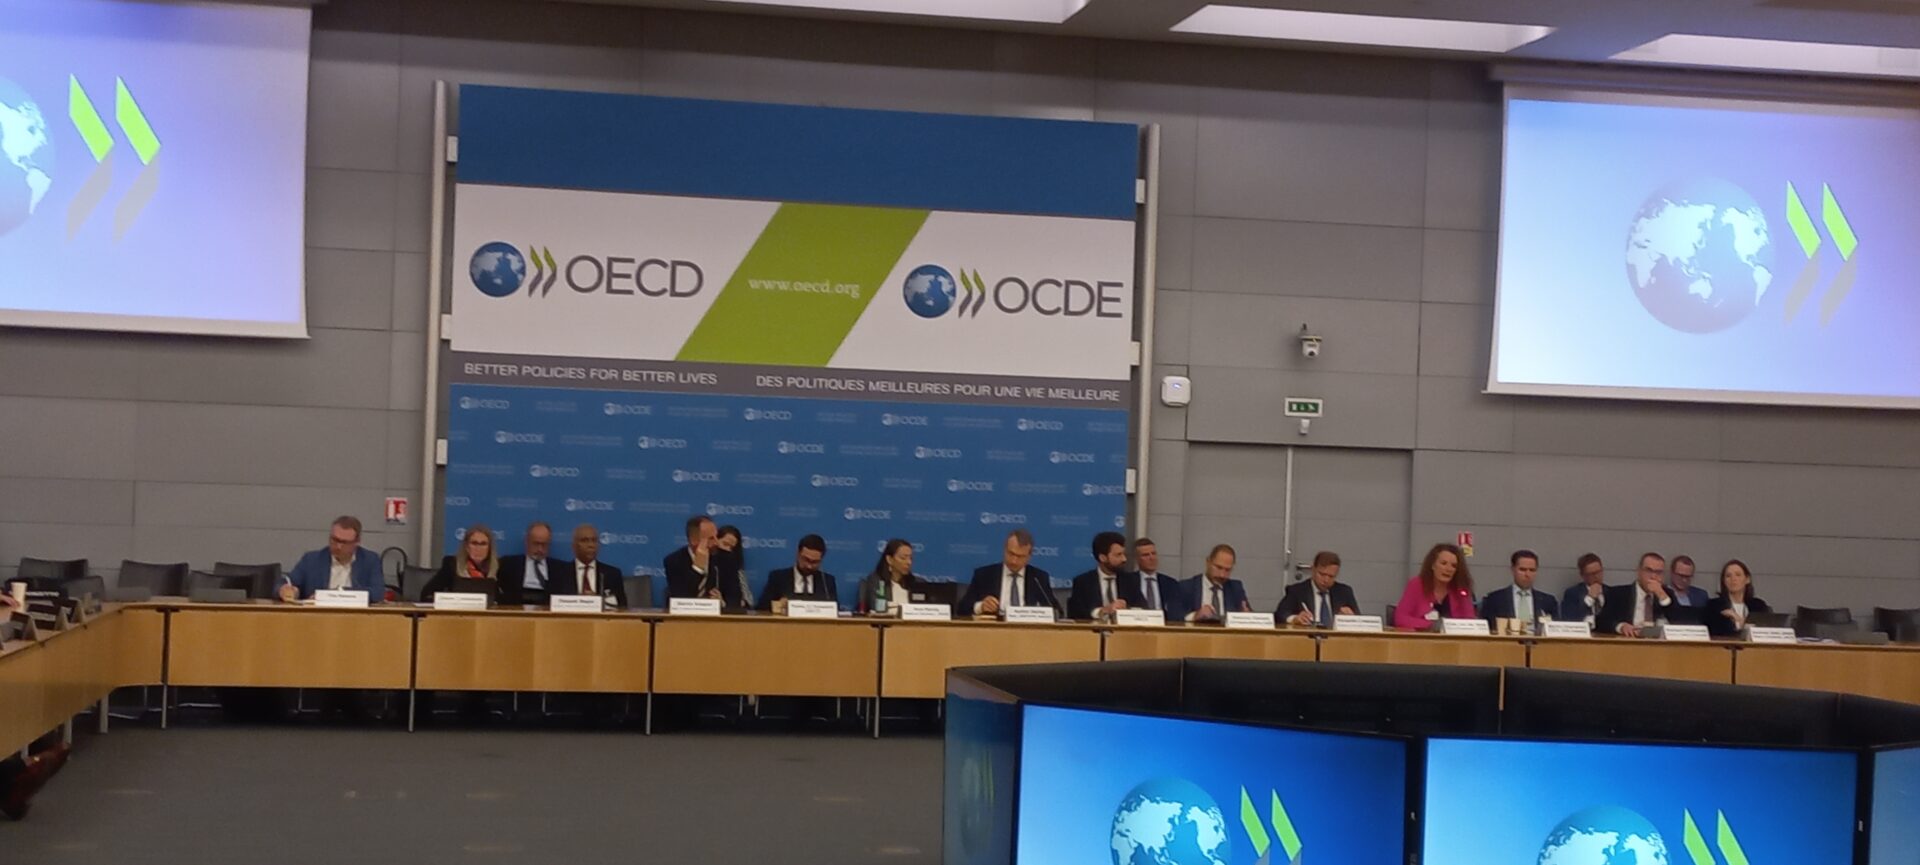 OECD IPA